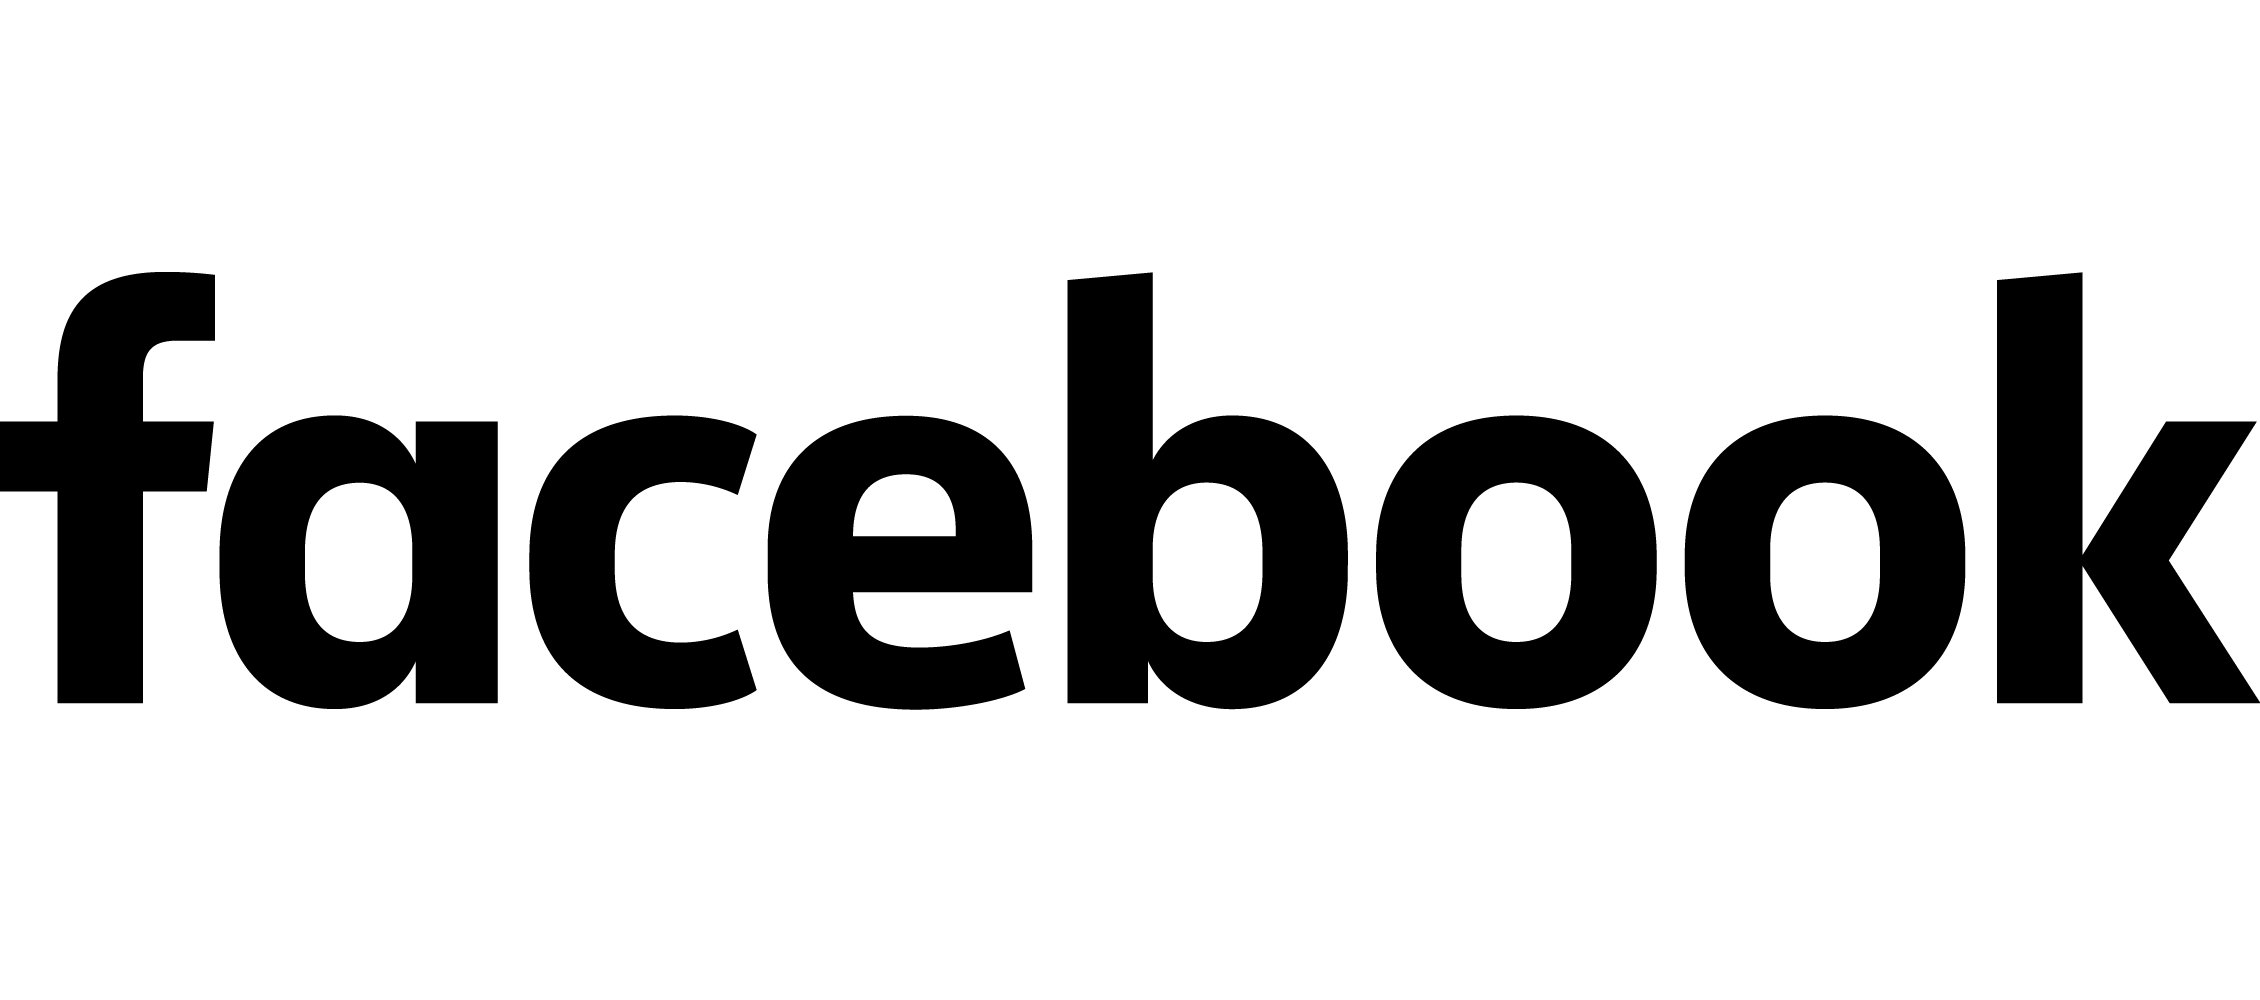 Logo de Facebook monochrome